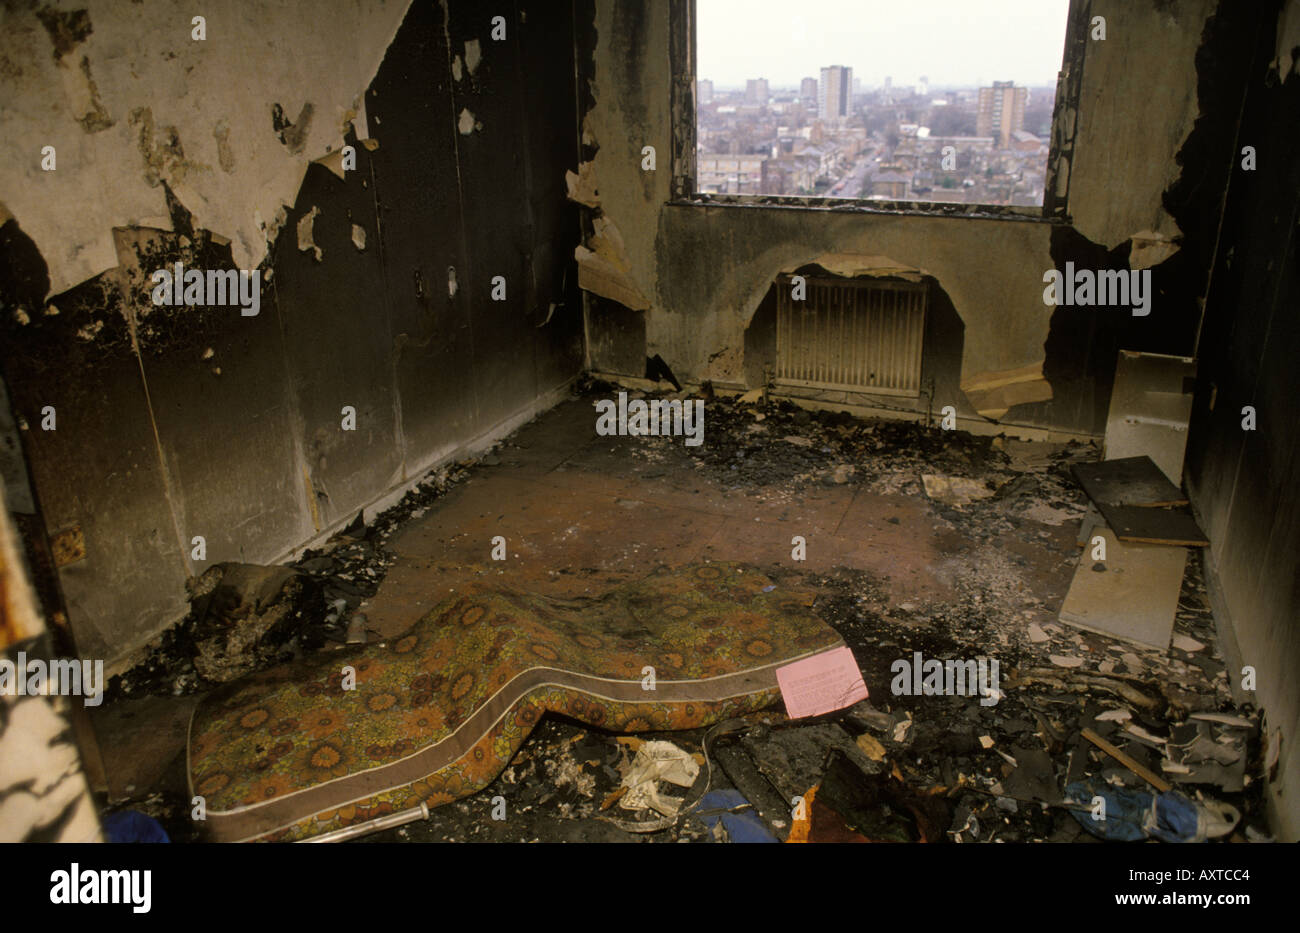 Ausgebrannte Wohnung in einem Turmblock in einem stadthaus in Hackney East London Wohnung zerstört von schlechten Pächtern, die alles in Brand setzten. 1990er Jahre Großbritannien Stockfoto